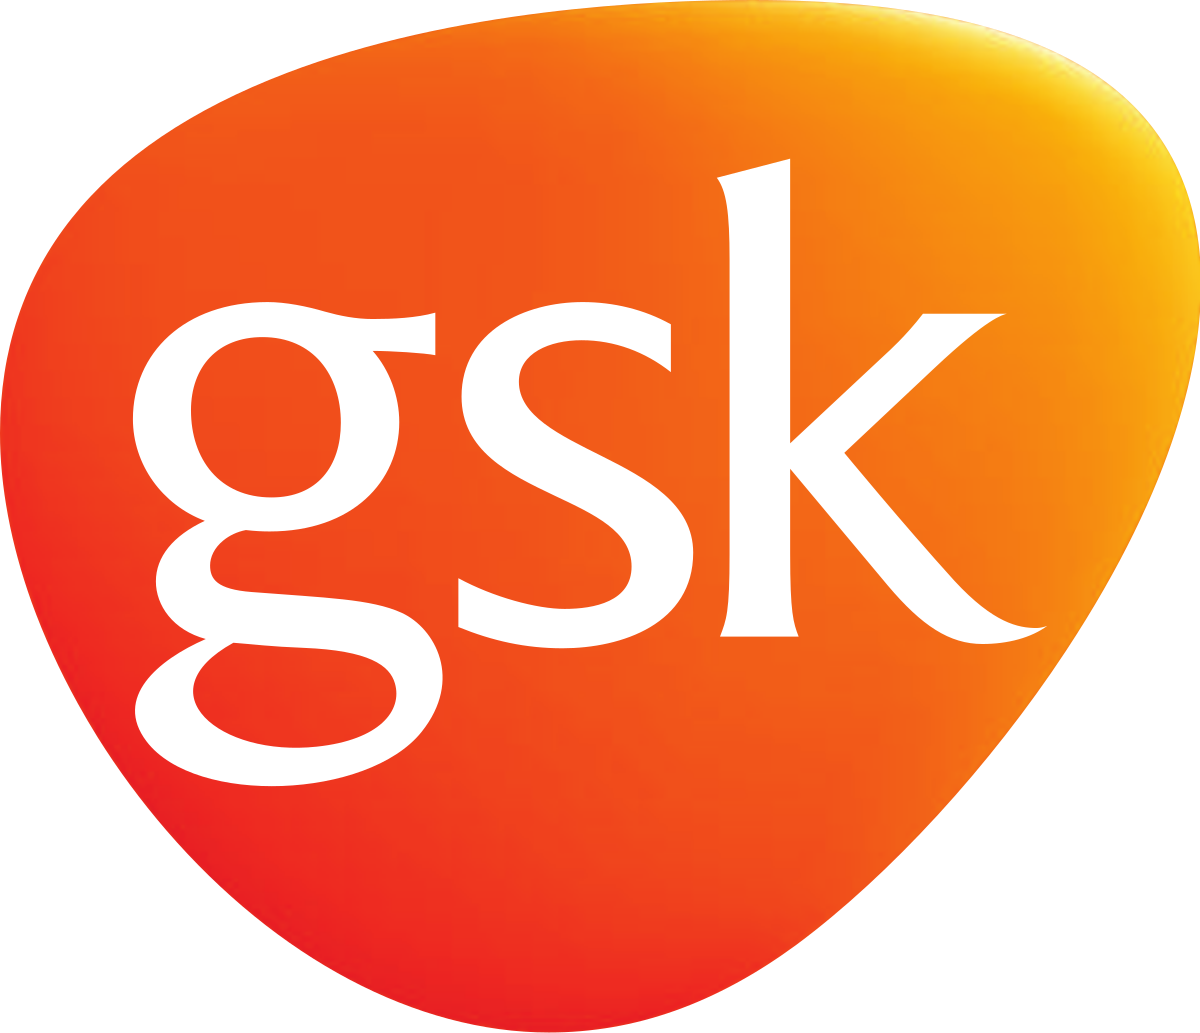 gsk-logo-companies-attending